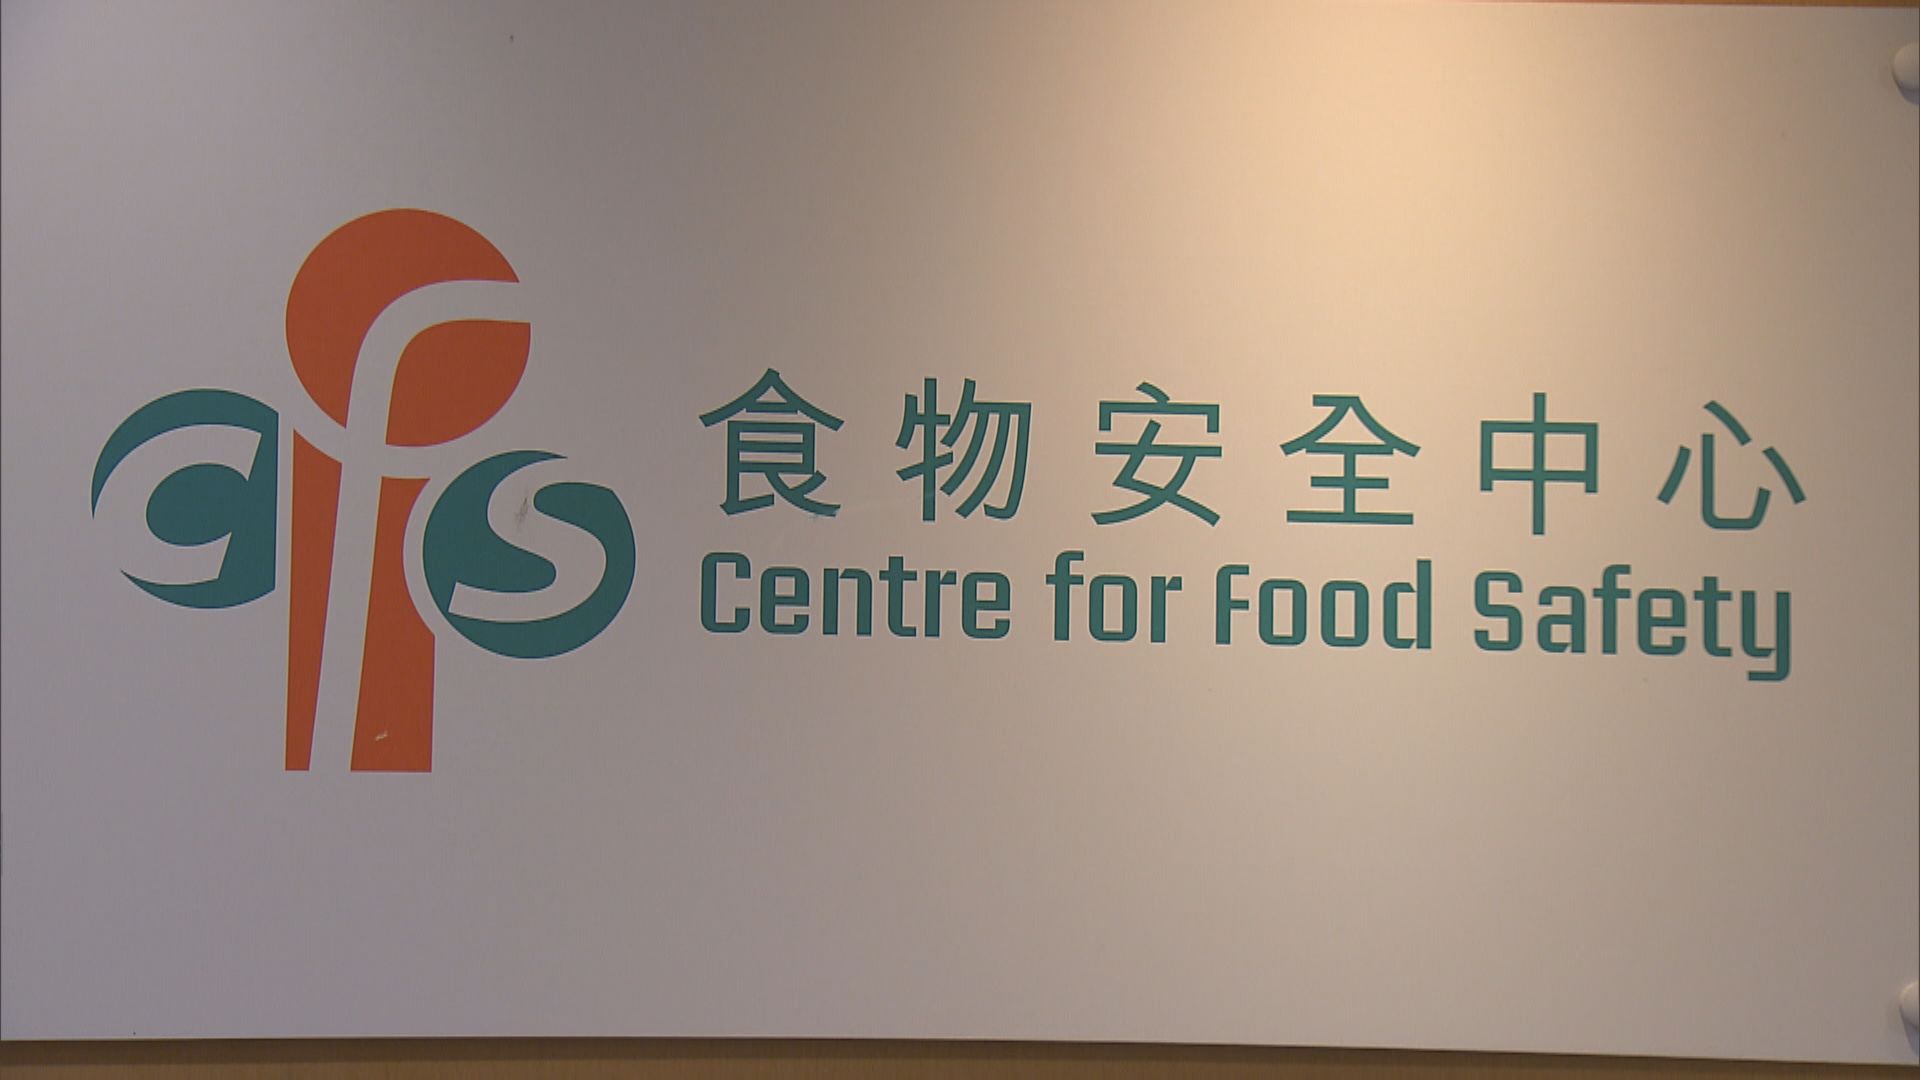 食安中心於日本進口食品發現疑禁進口食品